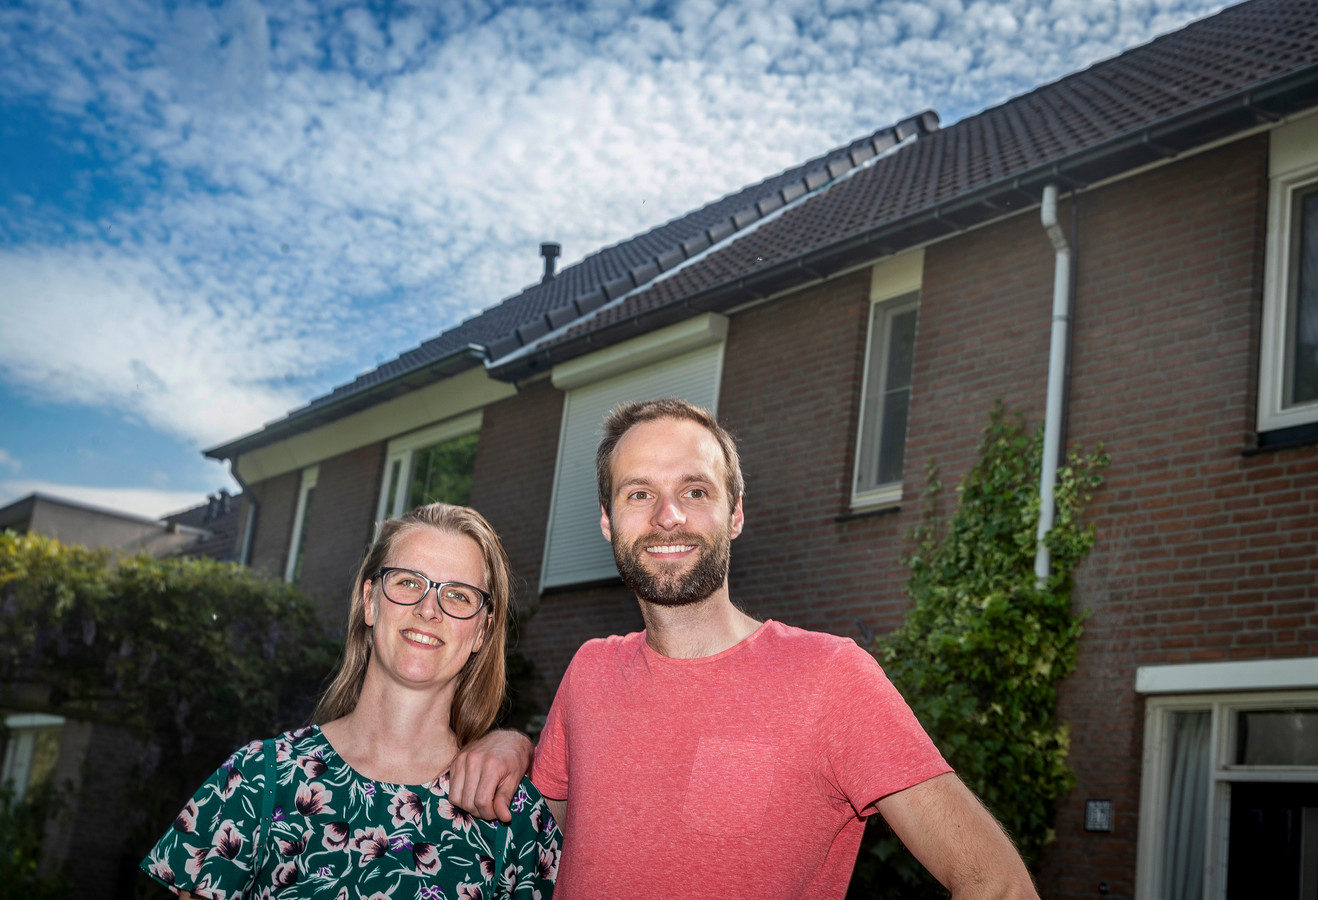 Nicky de Jonge en Paul Janssen uit Eindhoven hebben hun dak aan de buitenkant laten isoleren. Dat bleek lastiger dan gedacht omdat de gemeente niet mee wilde werken.